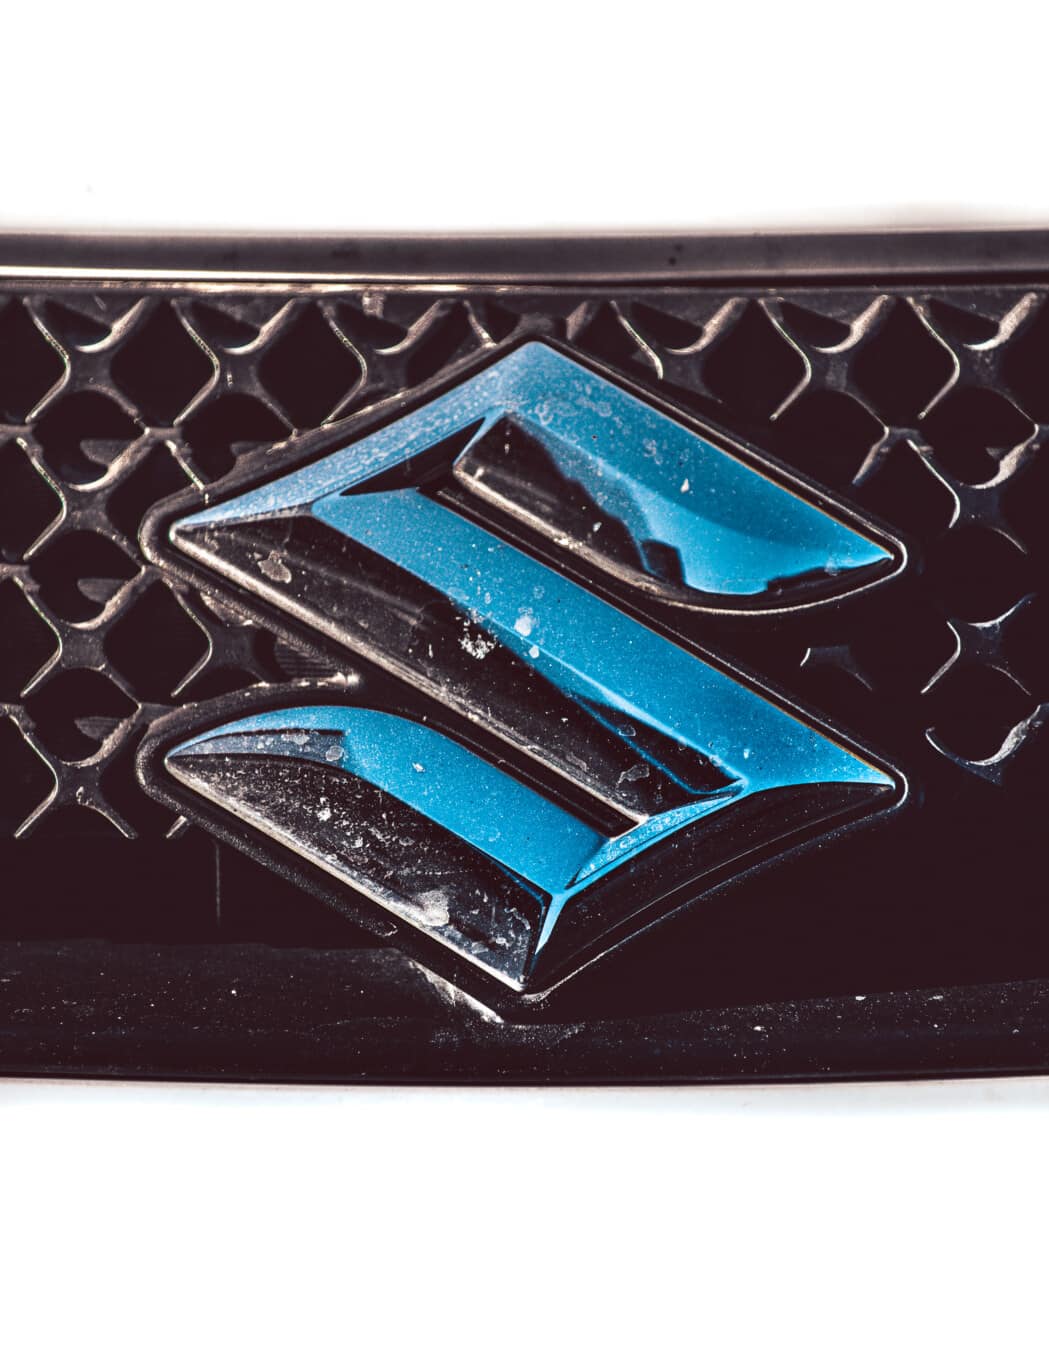 Suzuki, signe, chrome, métalliques, metal, fermer, conception, moderne, style, couleur